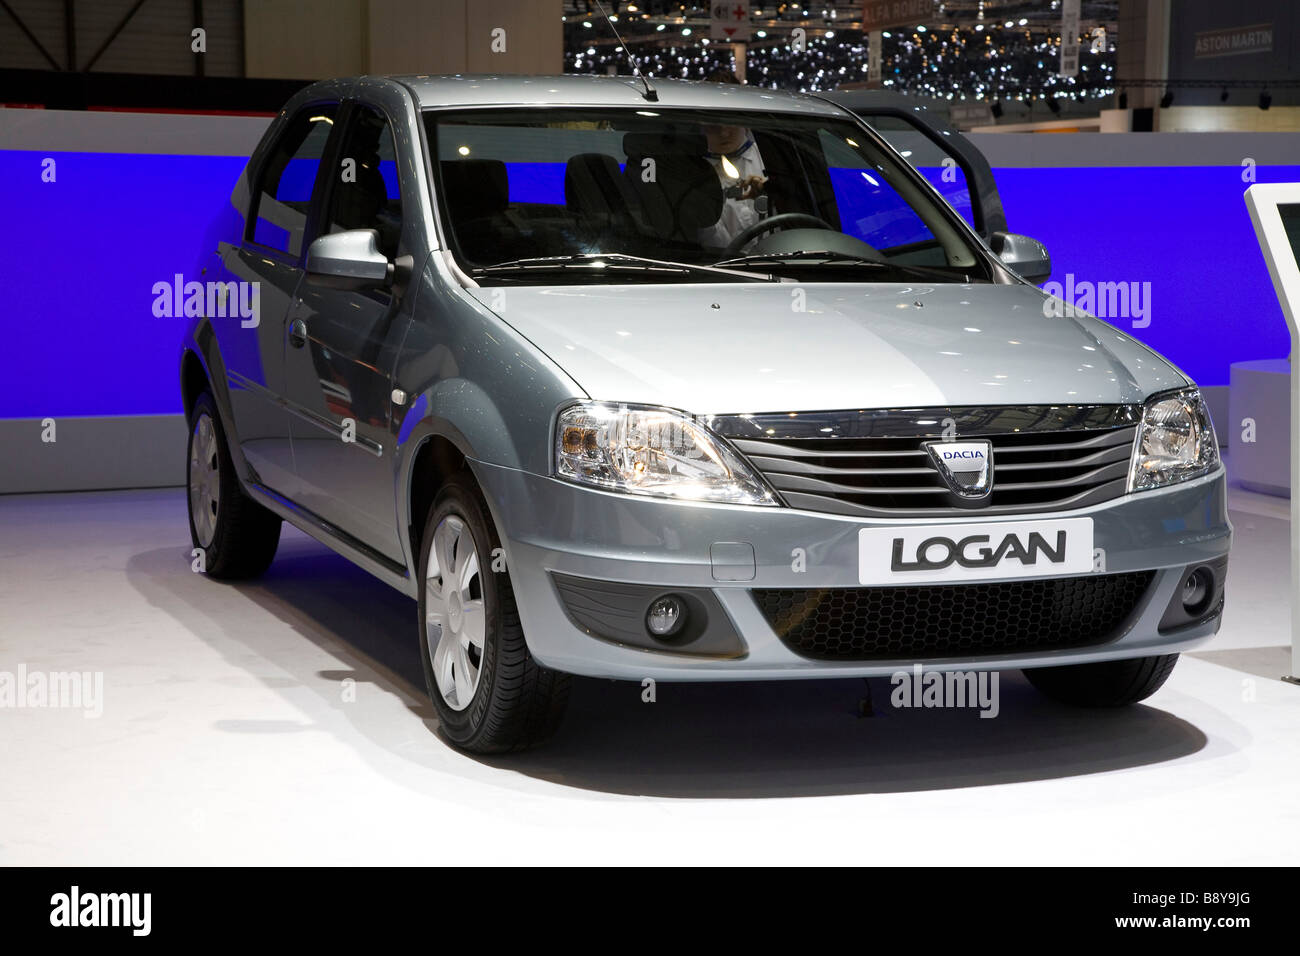 Dacia Logan indiqué lors d'un salon de l'automobile. Banque D'Images